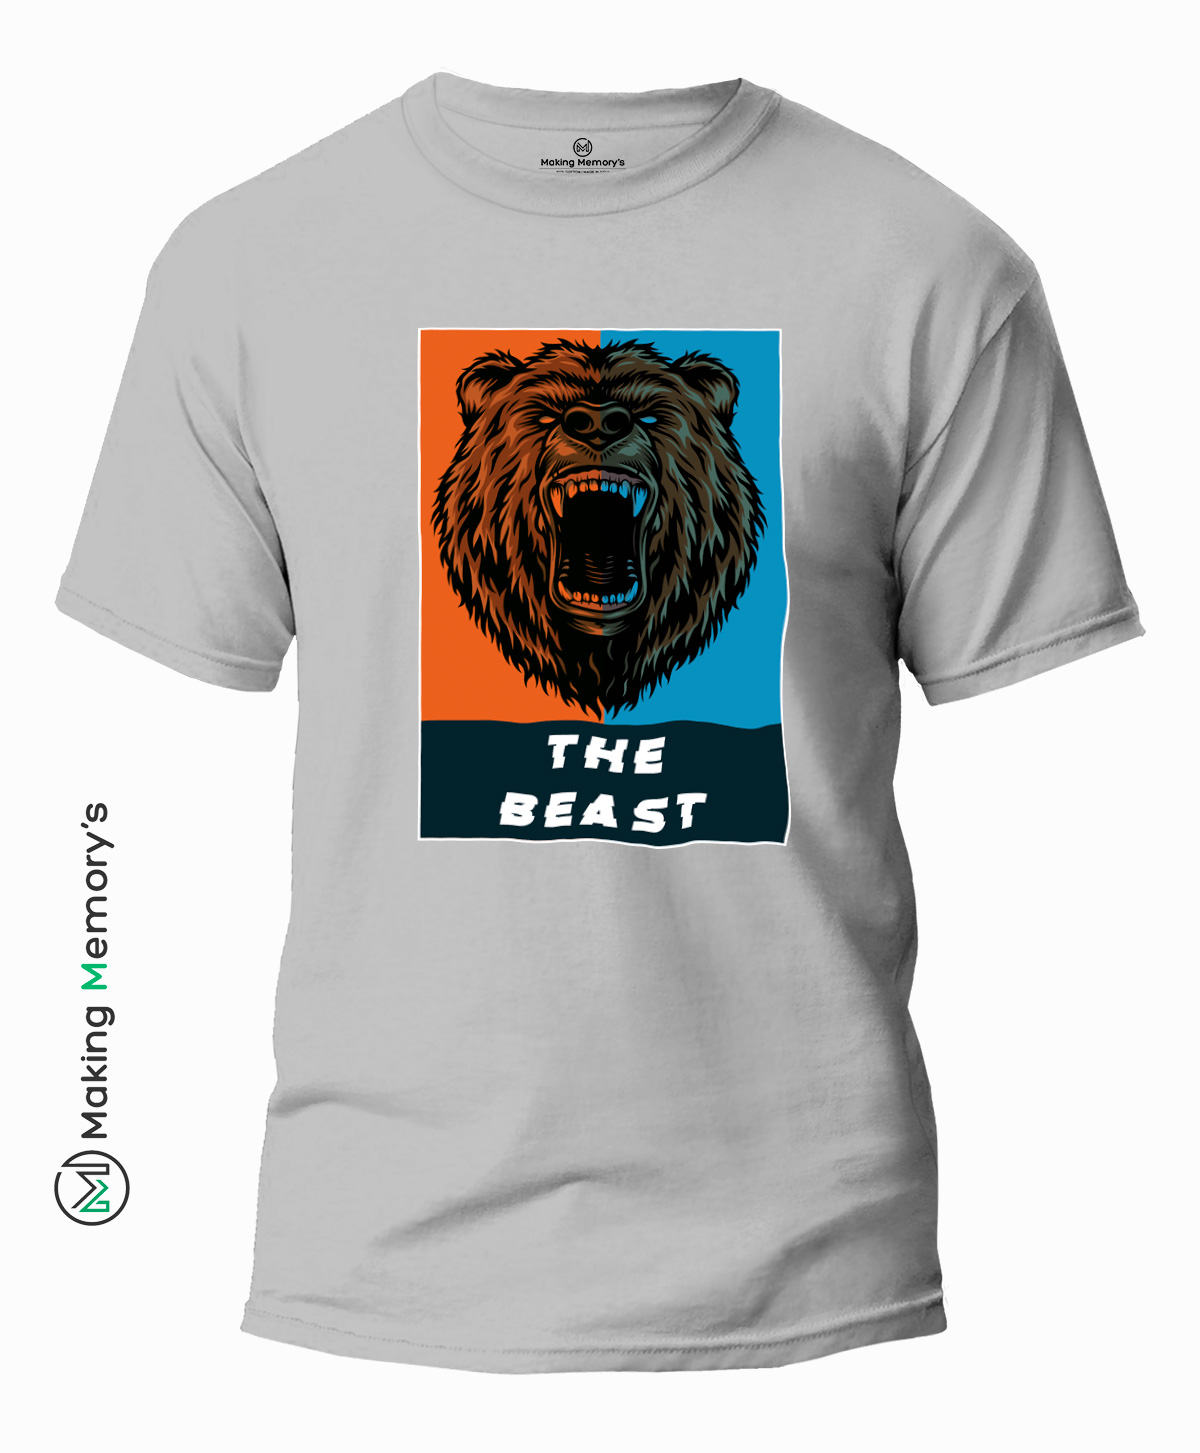 The-Beast-Mode-Gray-T-Shirt